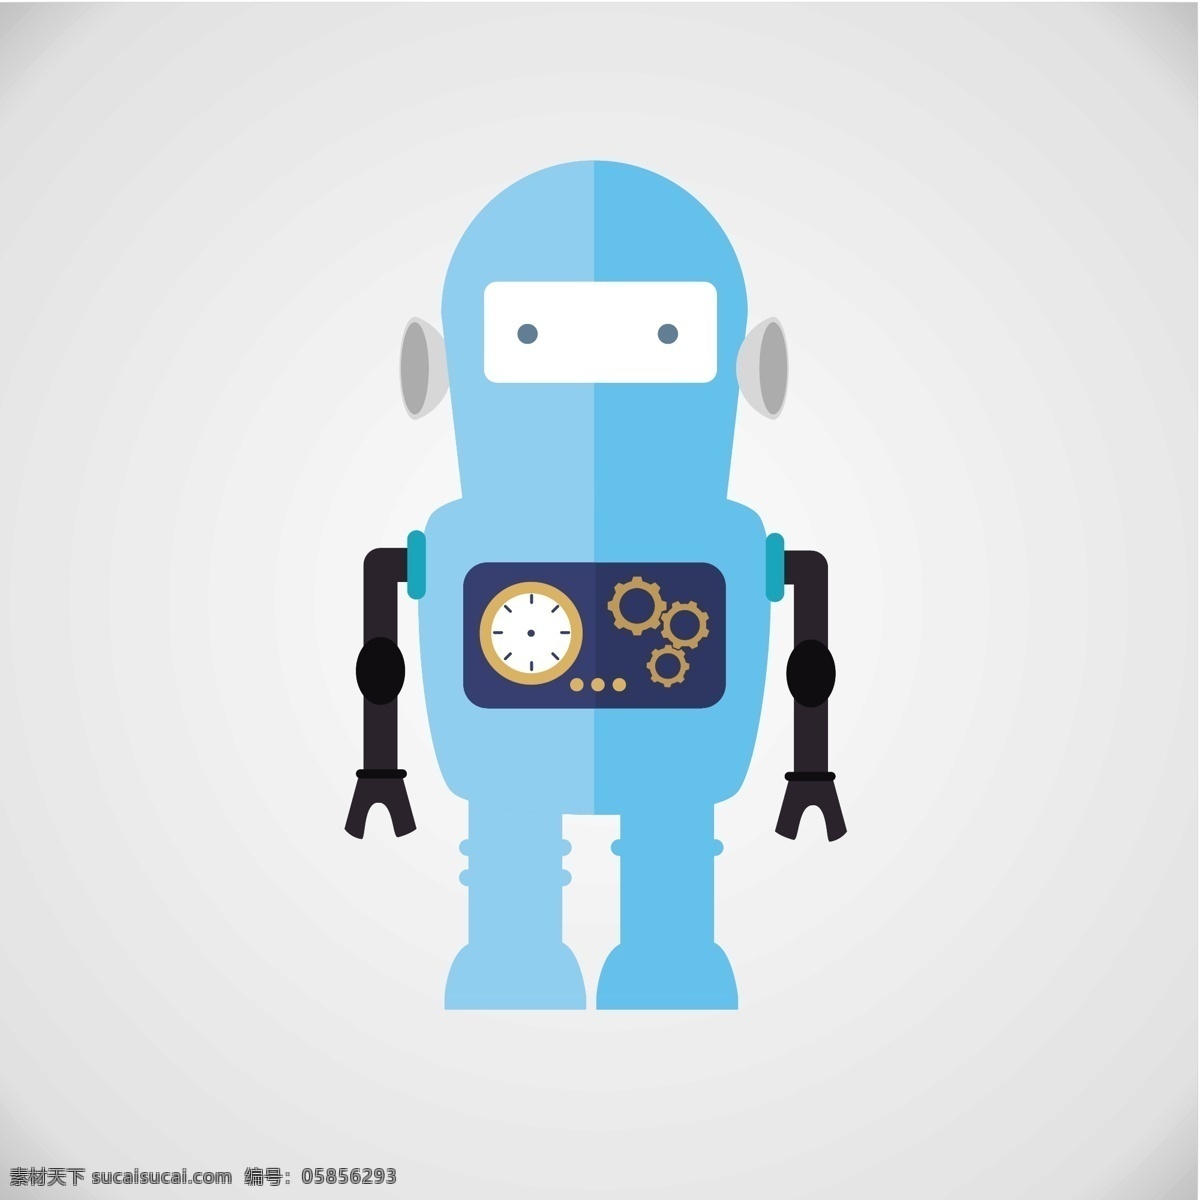 平坦 蓝色 机器人 矢量图 蓝色机器人 人物 可爱的机器人 扁平的机器人 齿轮 人类的机器人 机械 机器人的特点 机器人时间